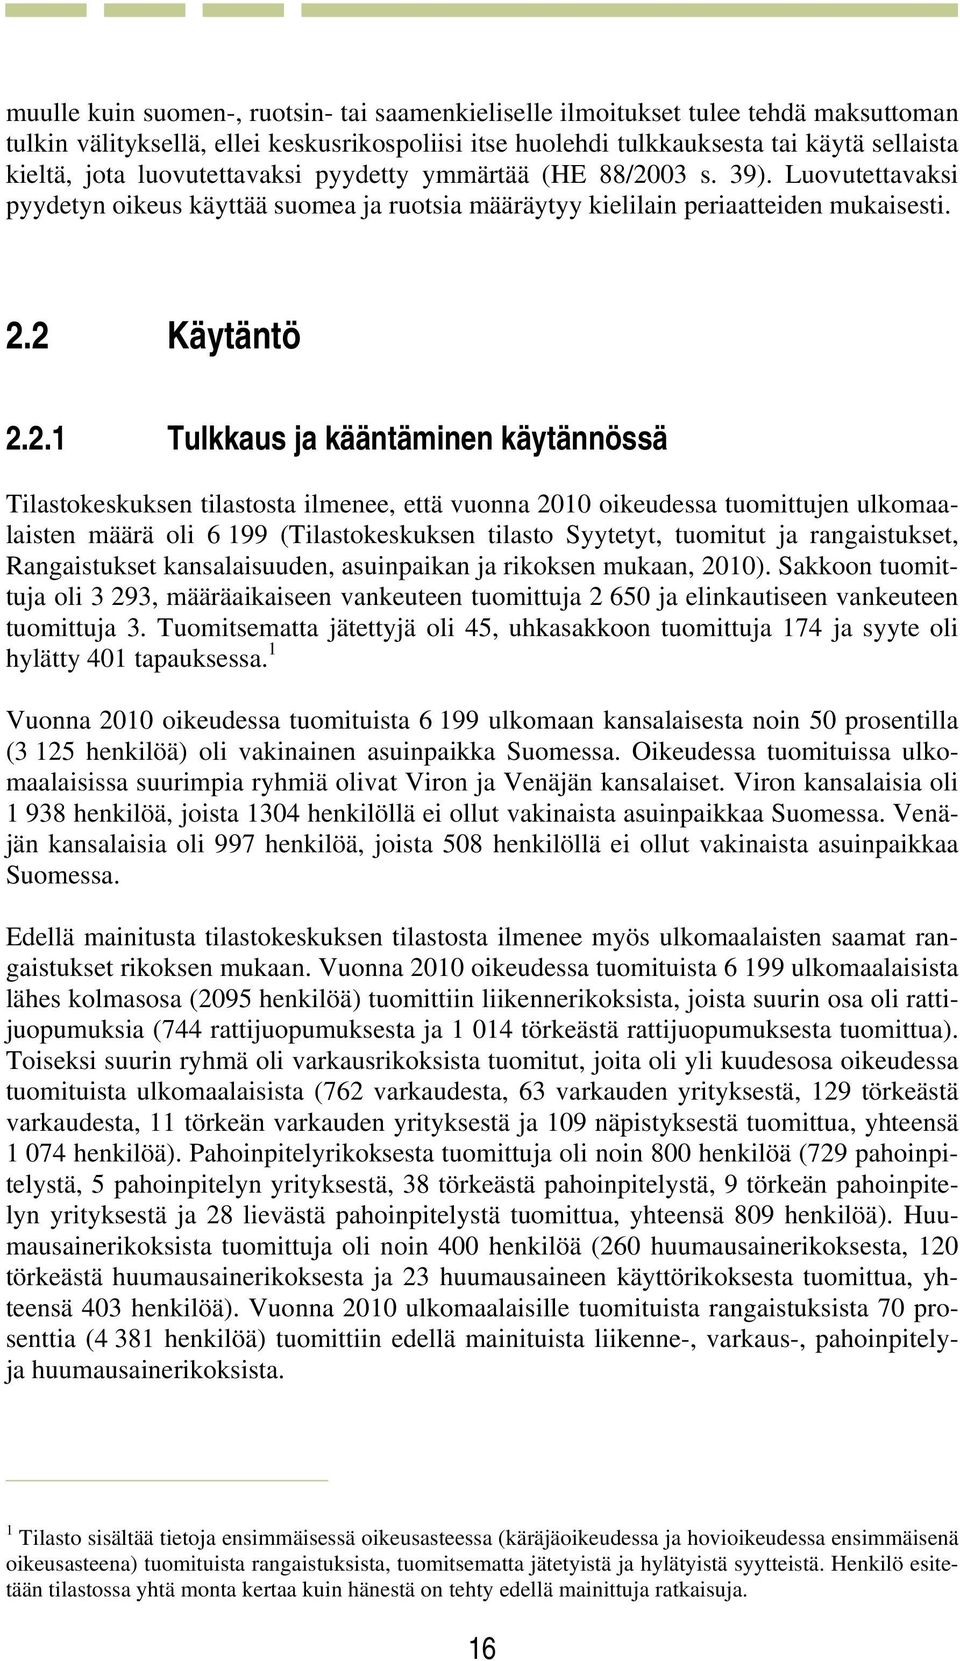 03 s. 39). Luovutettavaksi pyydetyn oikeus käyttää suomea ja ruotsia määräytyy kielilain periaatteiden mukaisesti. 2.